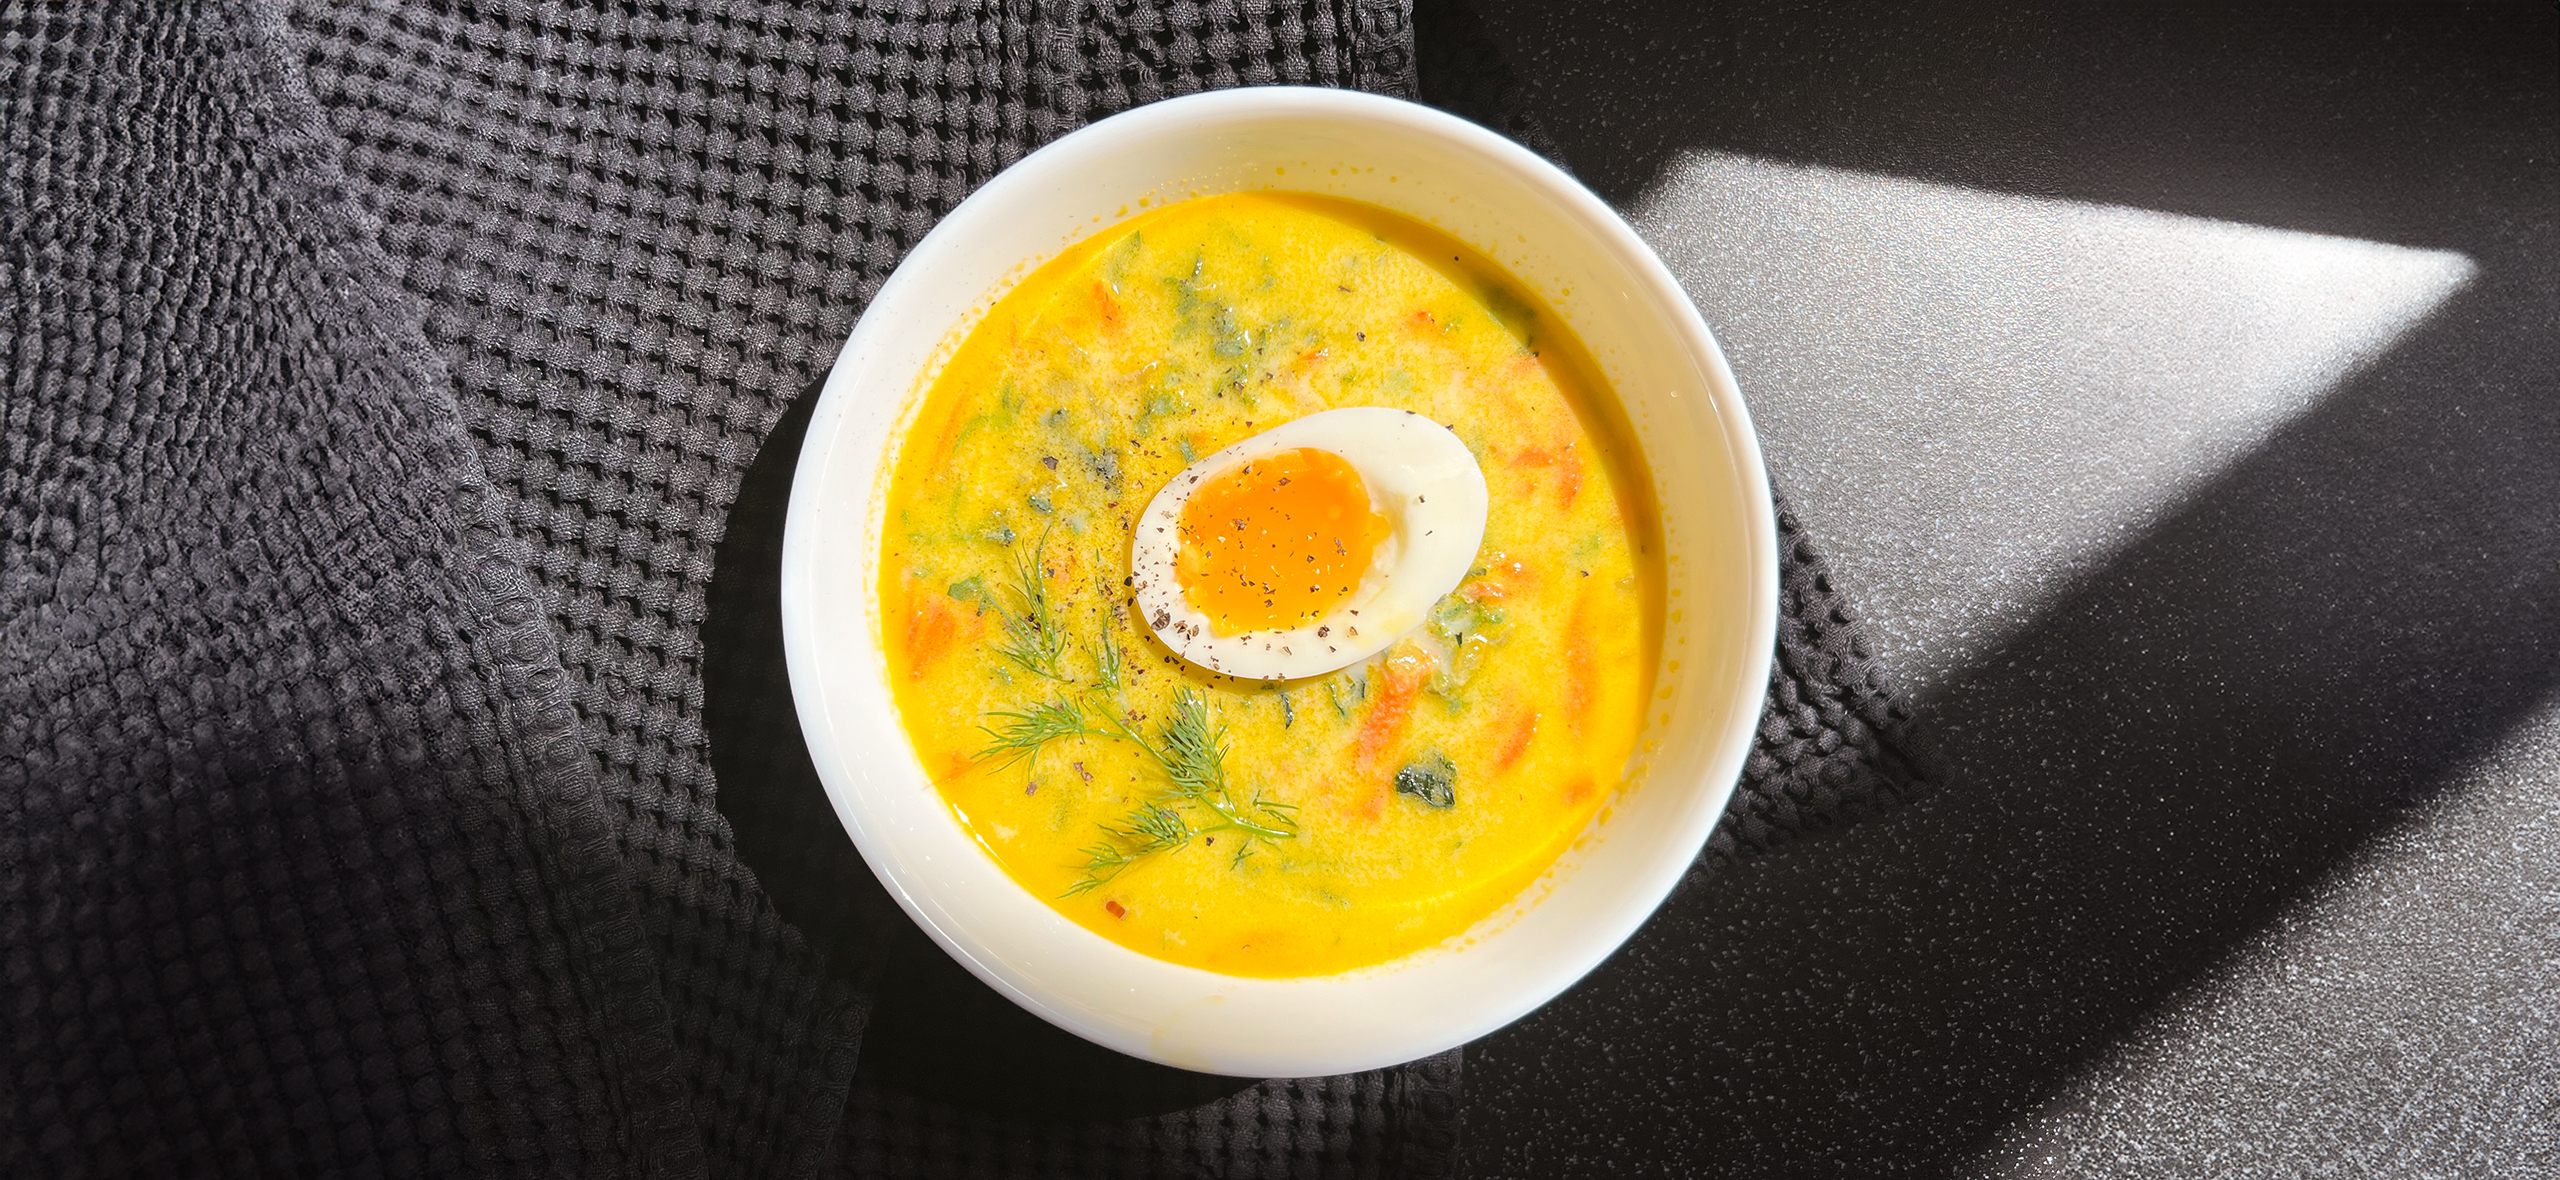 Рецепт весеннего супа из молодой крапивы, если хочется новых вкусов